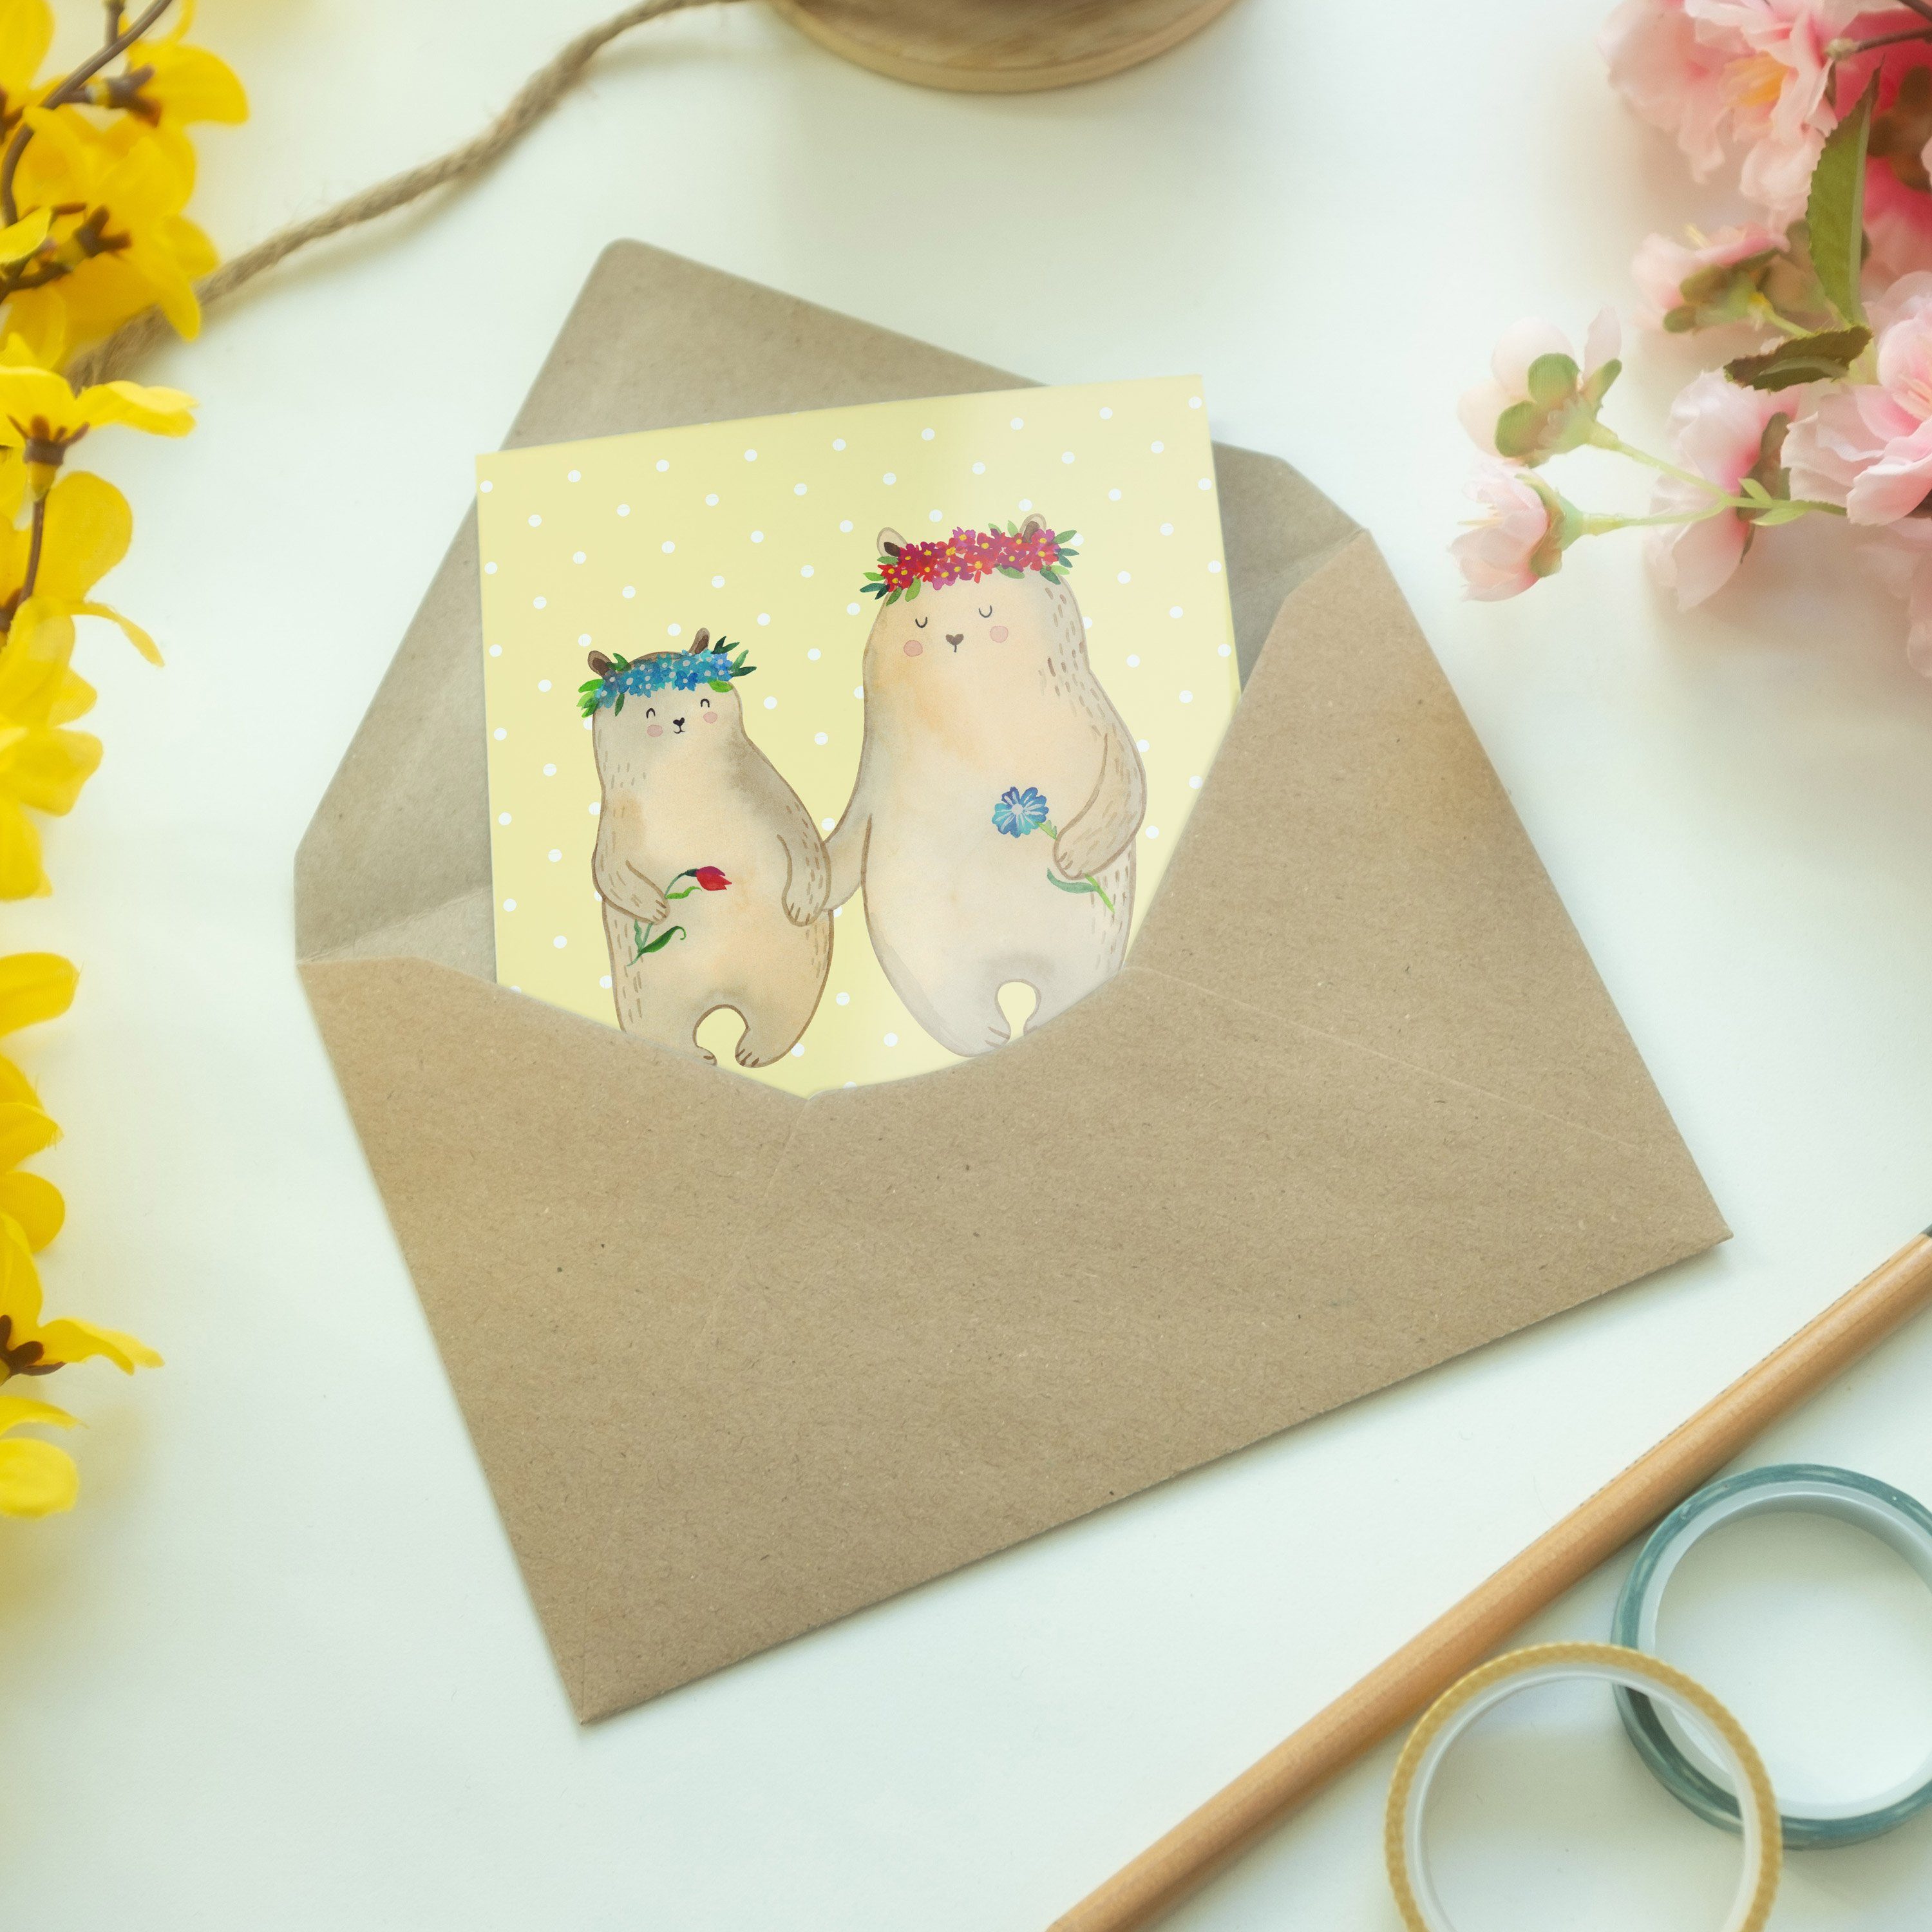 Mr. & Mrs. Geschenk, Panda Pastell Karte, - Gelb Bären Einlad - Mutti, mit Blumenkranz Grußkarte